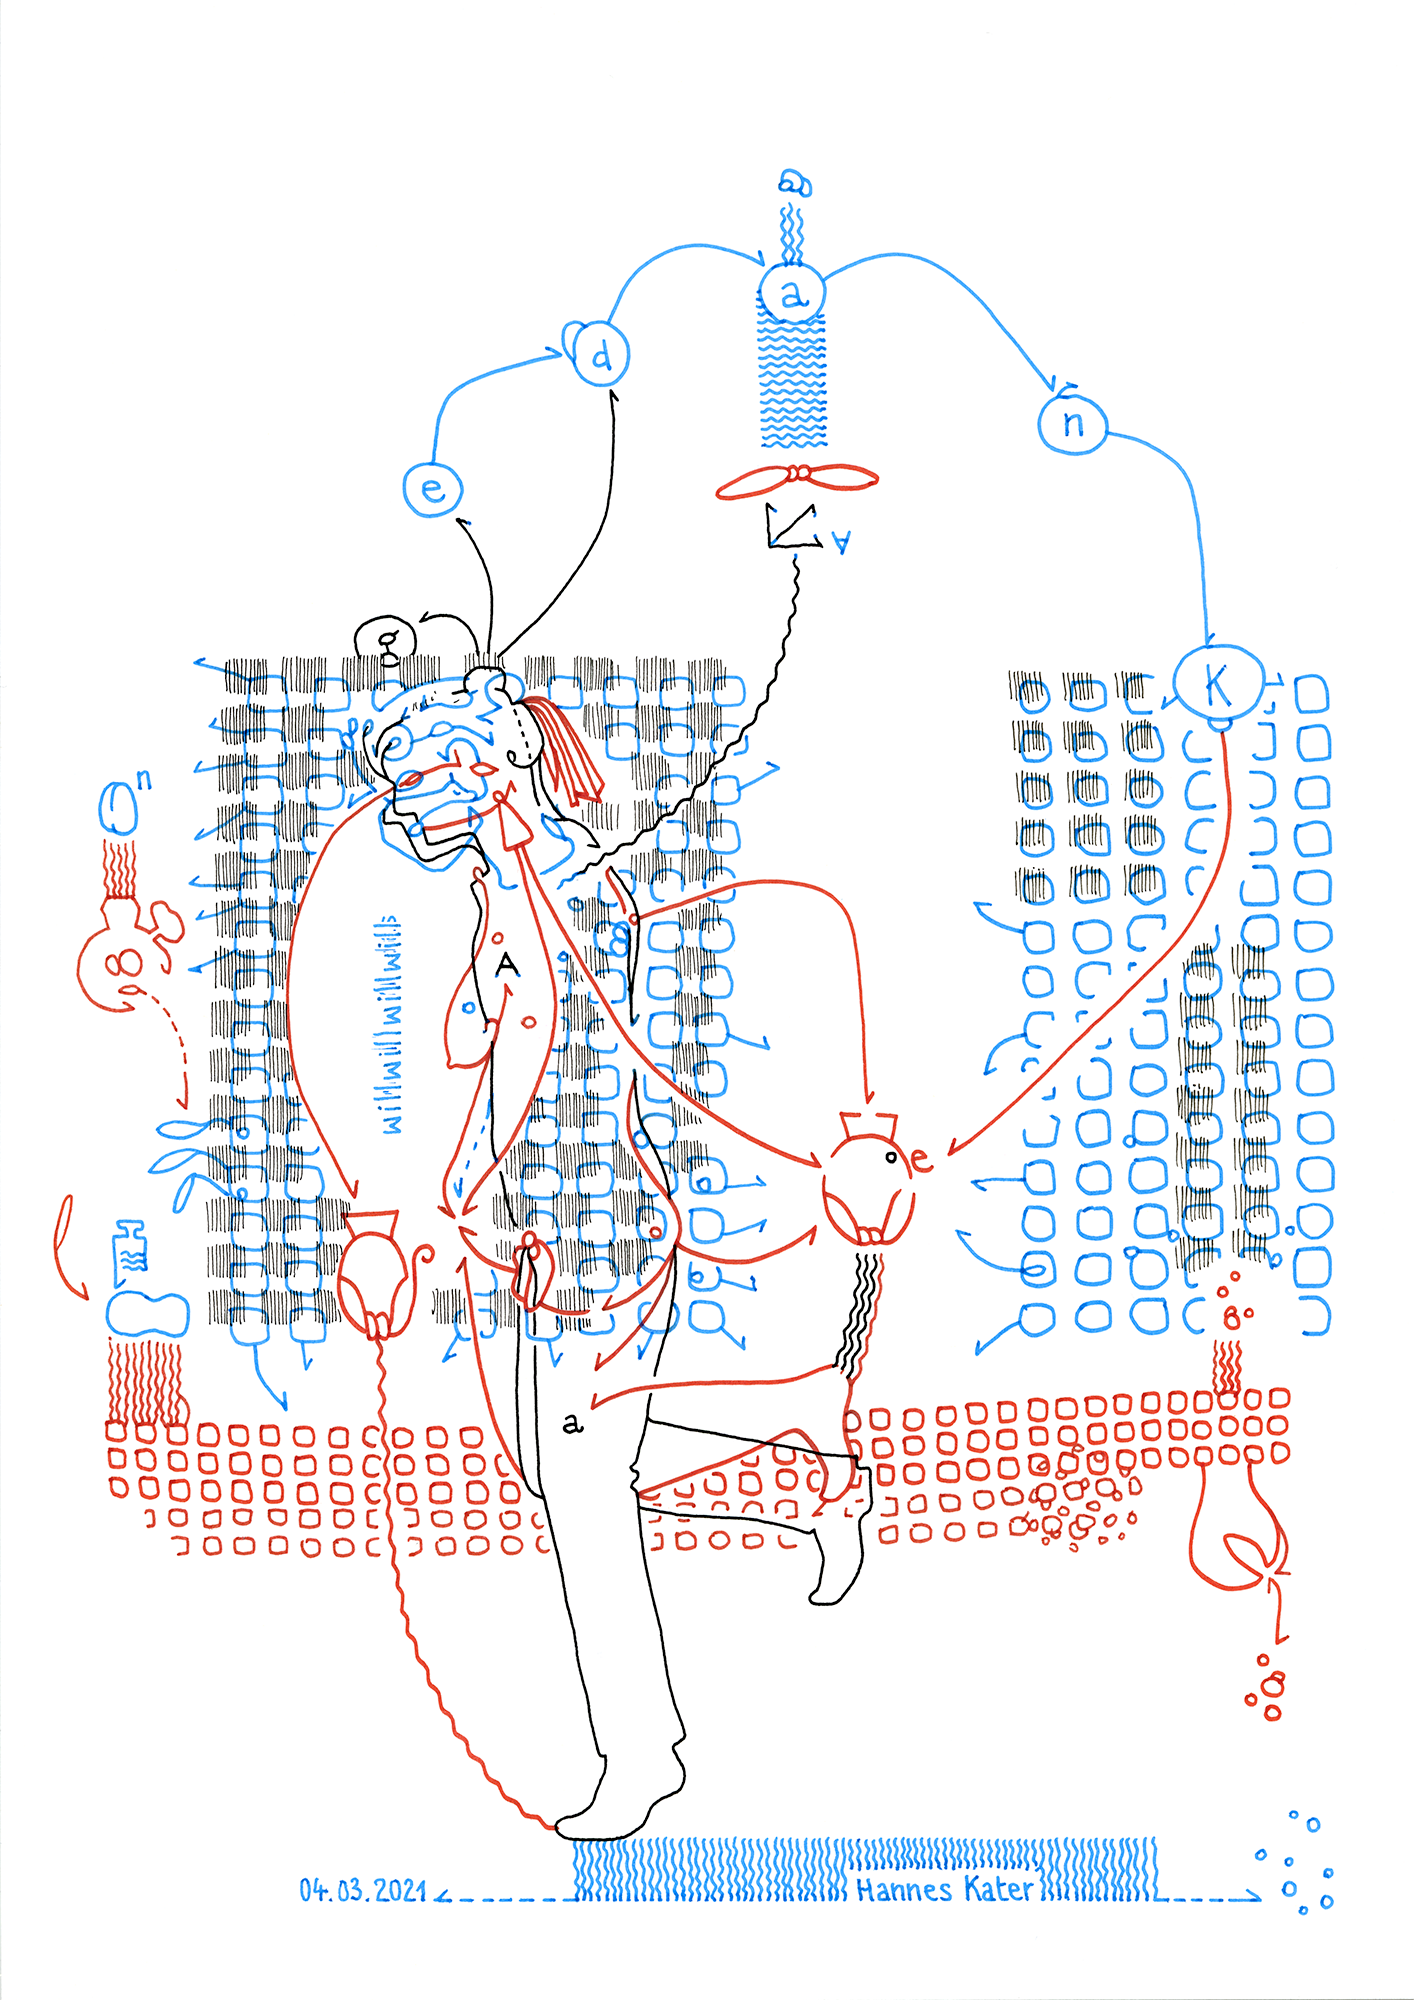 Hannes Kater: Tageszeichnung (Zeichnung/drawing) vom 04.03.2021 (1414 x 2000 Pixel)